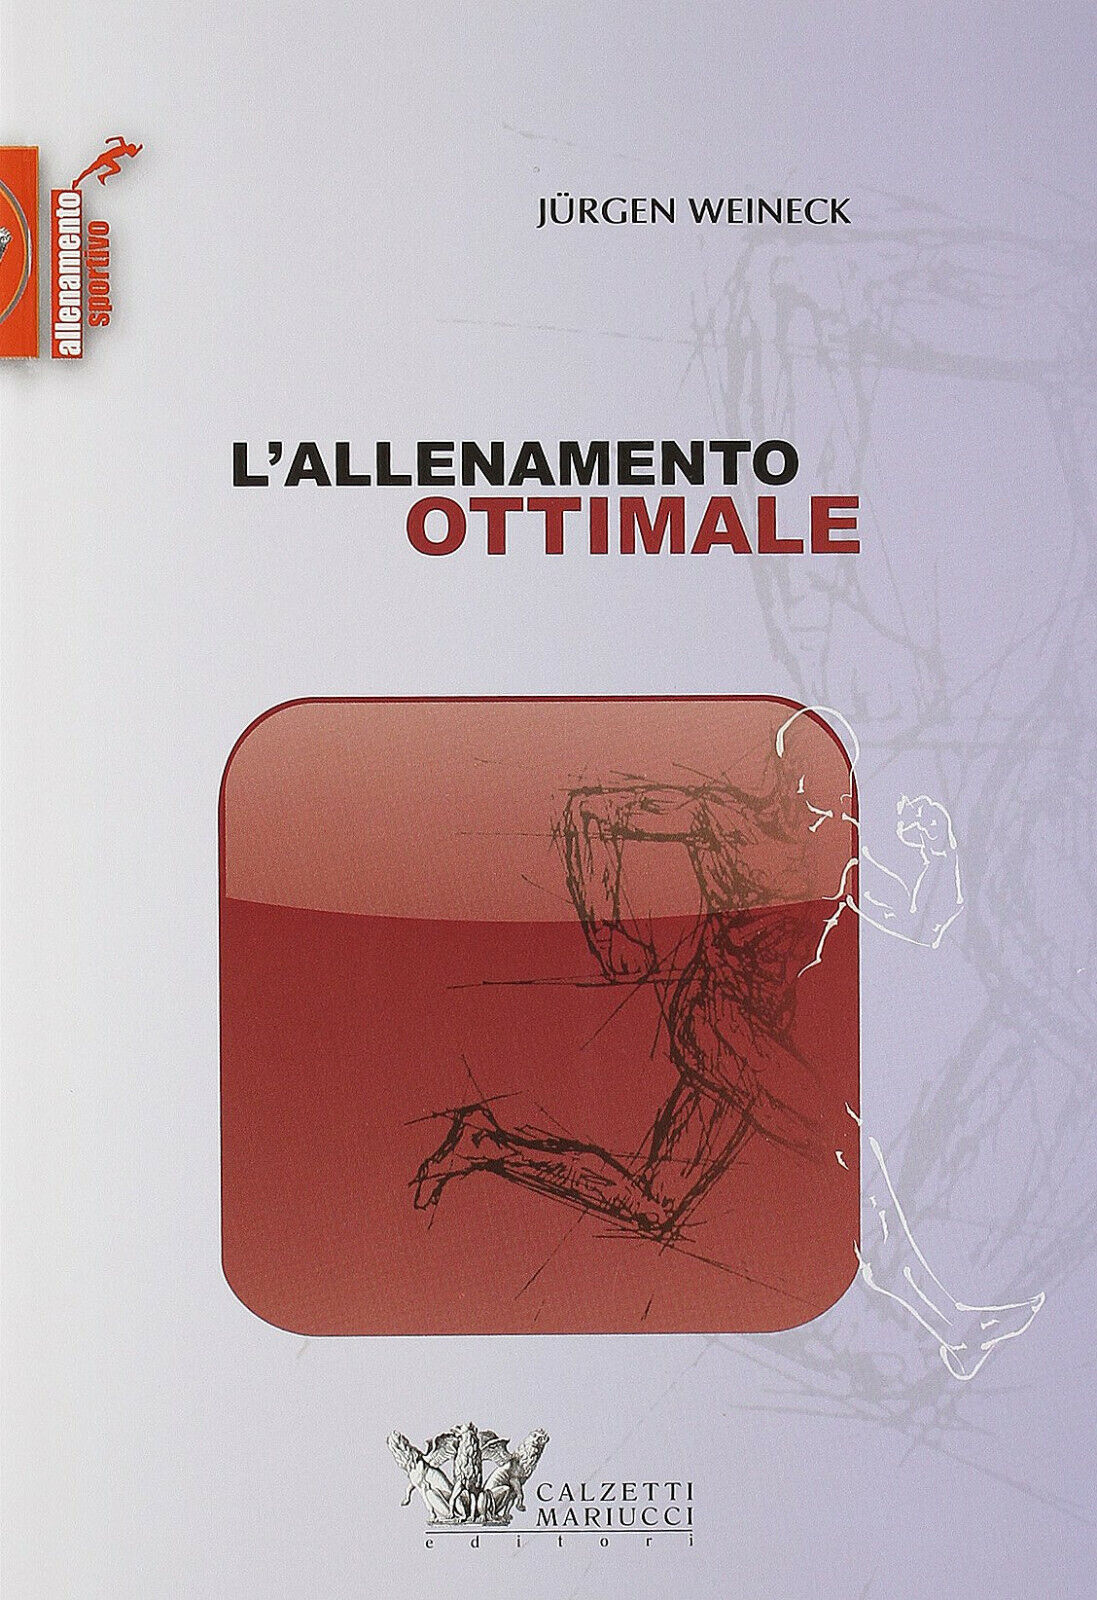 L'allenamento ottimale - J?rgen Weineck - Calzetti Mariucci, 2009